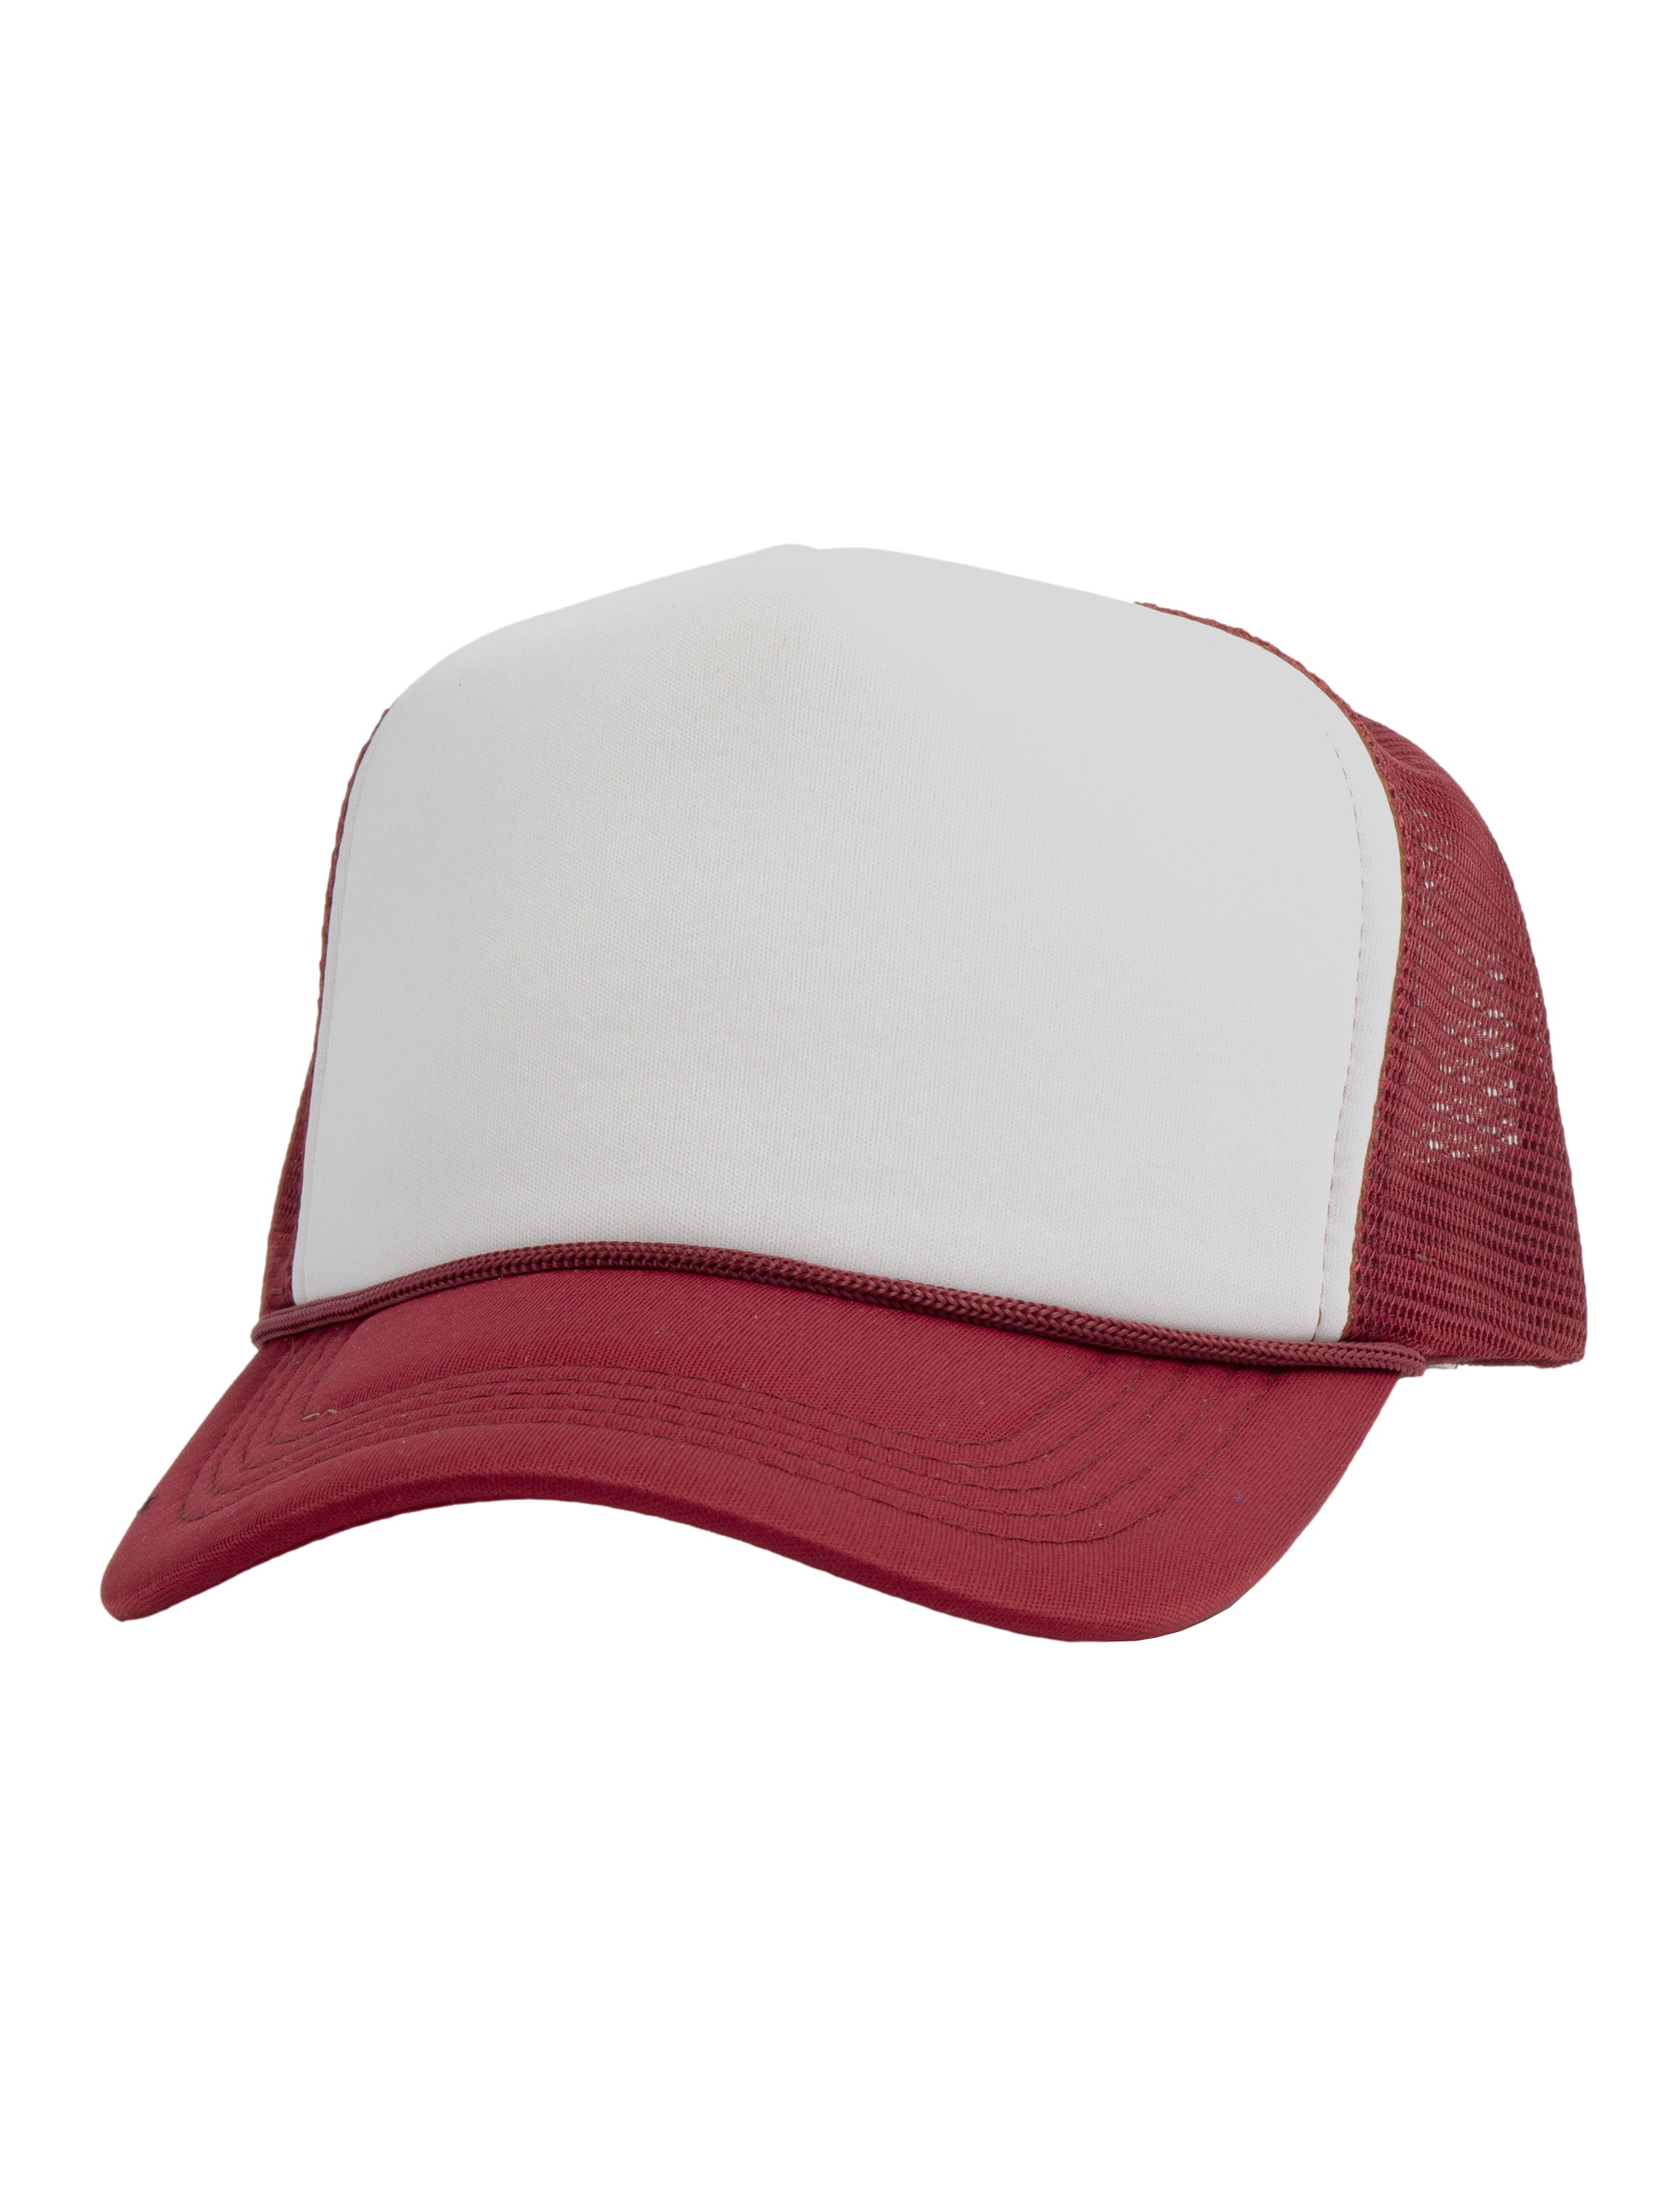 Top Headwear Blank Trucker Hat - Mens Trucker Hats Foam Mesh